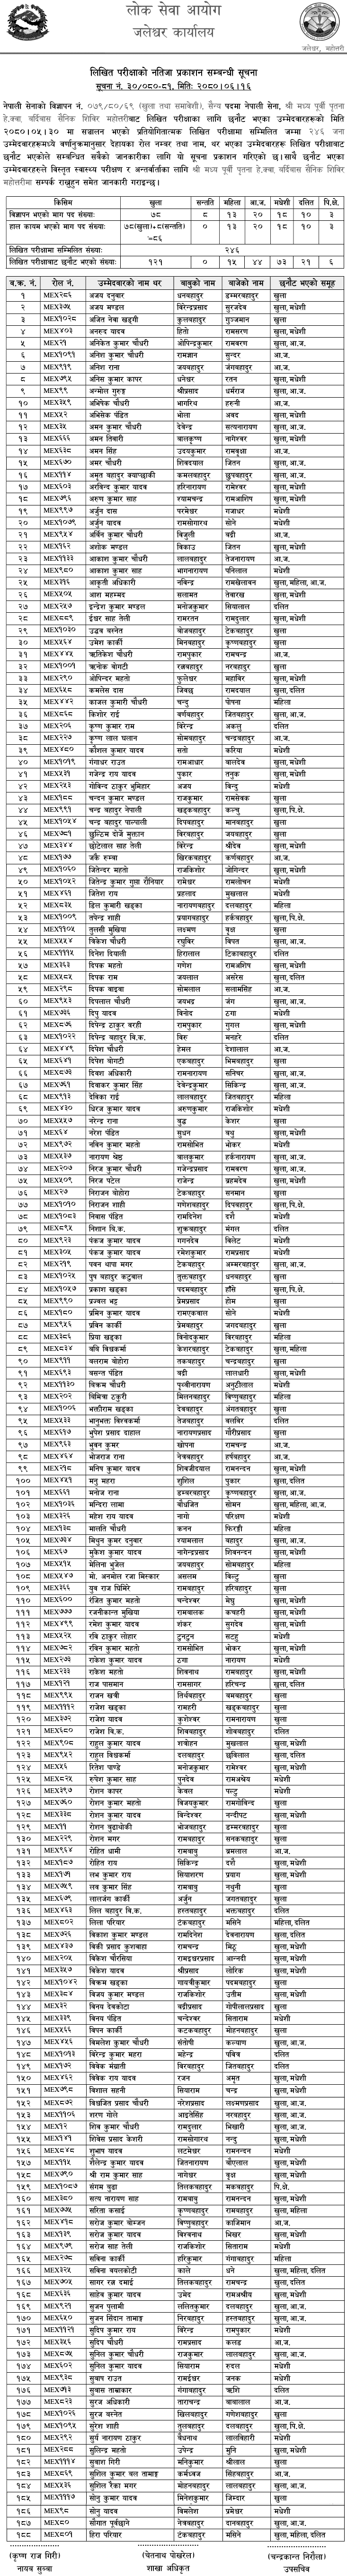 Nepal Army Sainya Post Mahottari Written Exam Result 2080